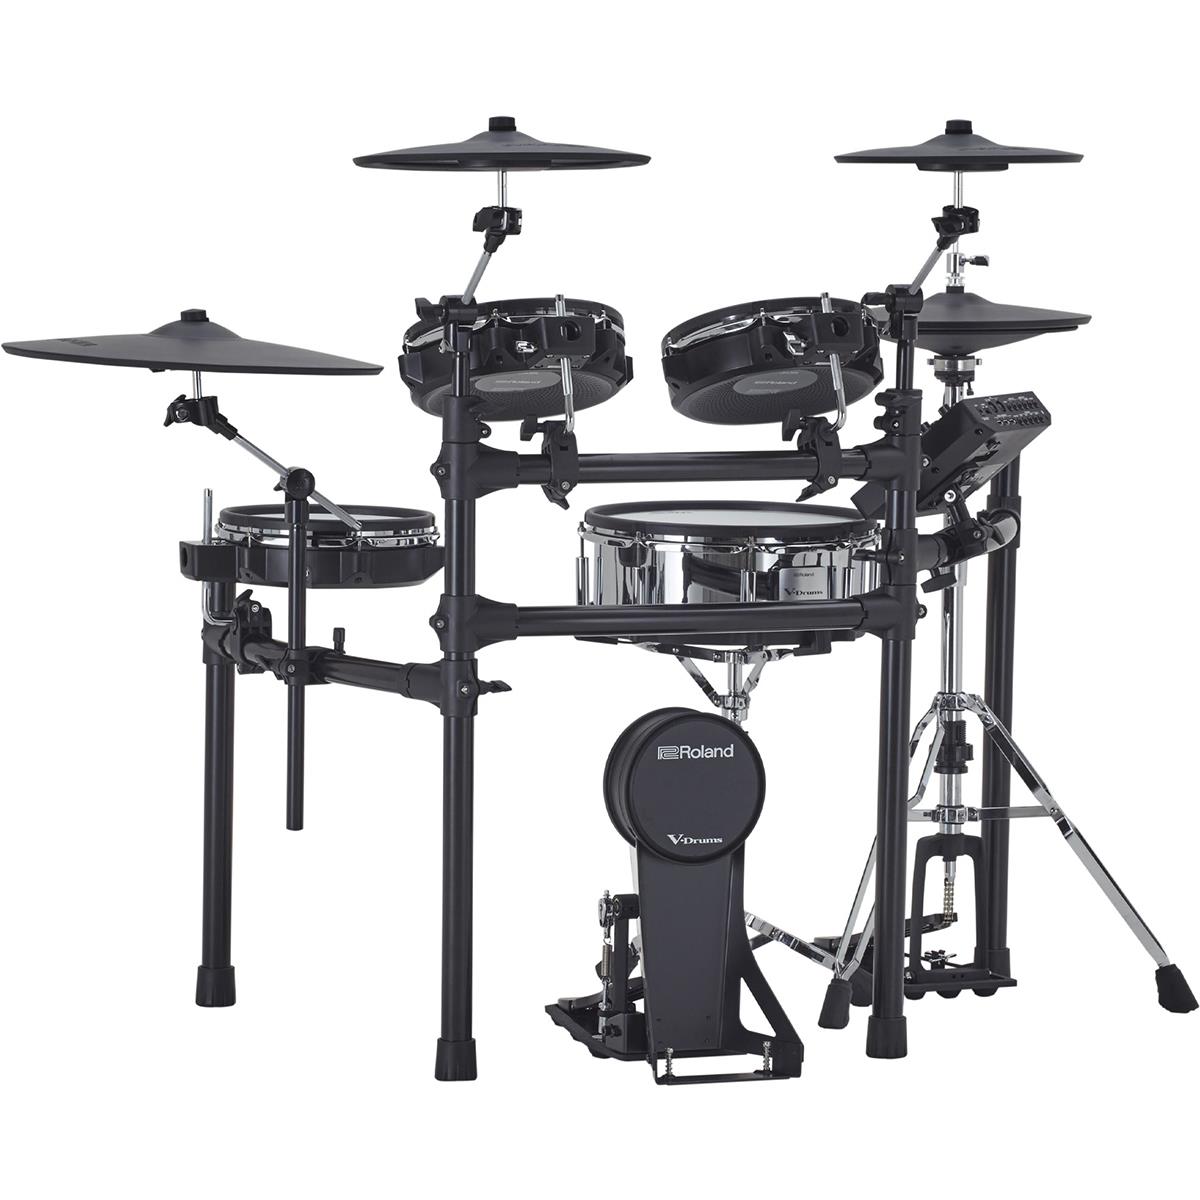 Image of Roland TD-27KV Generation 2 V-Drums Electronic Drum Kit